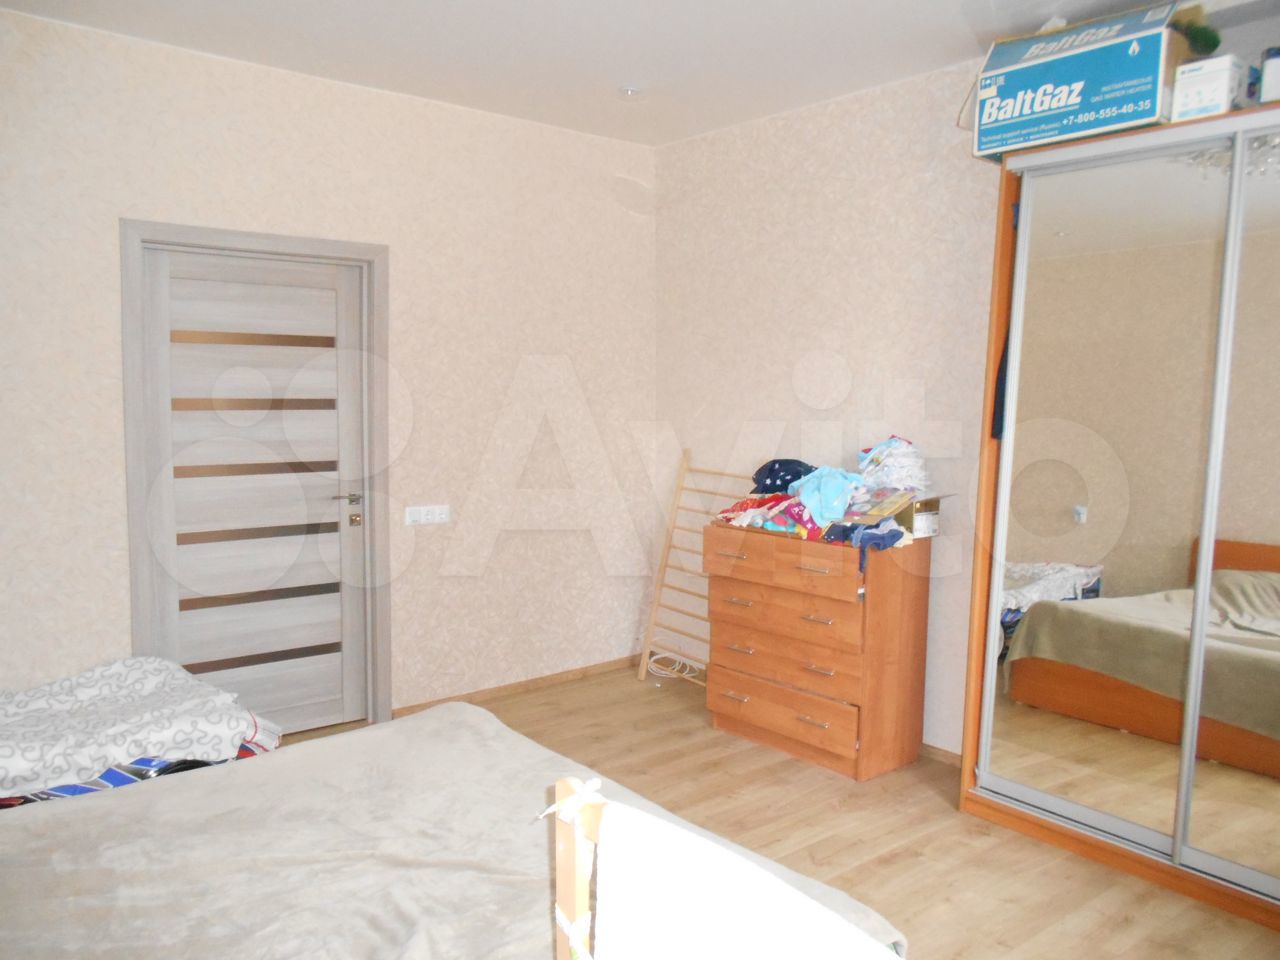  3-room apartment, 80 m2, 1/3 FL.  89962398843 buy 2